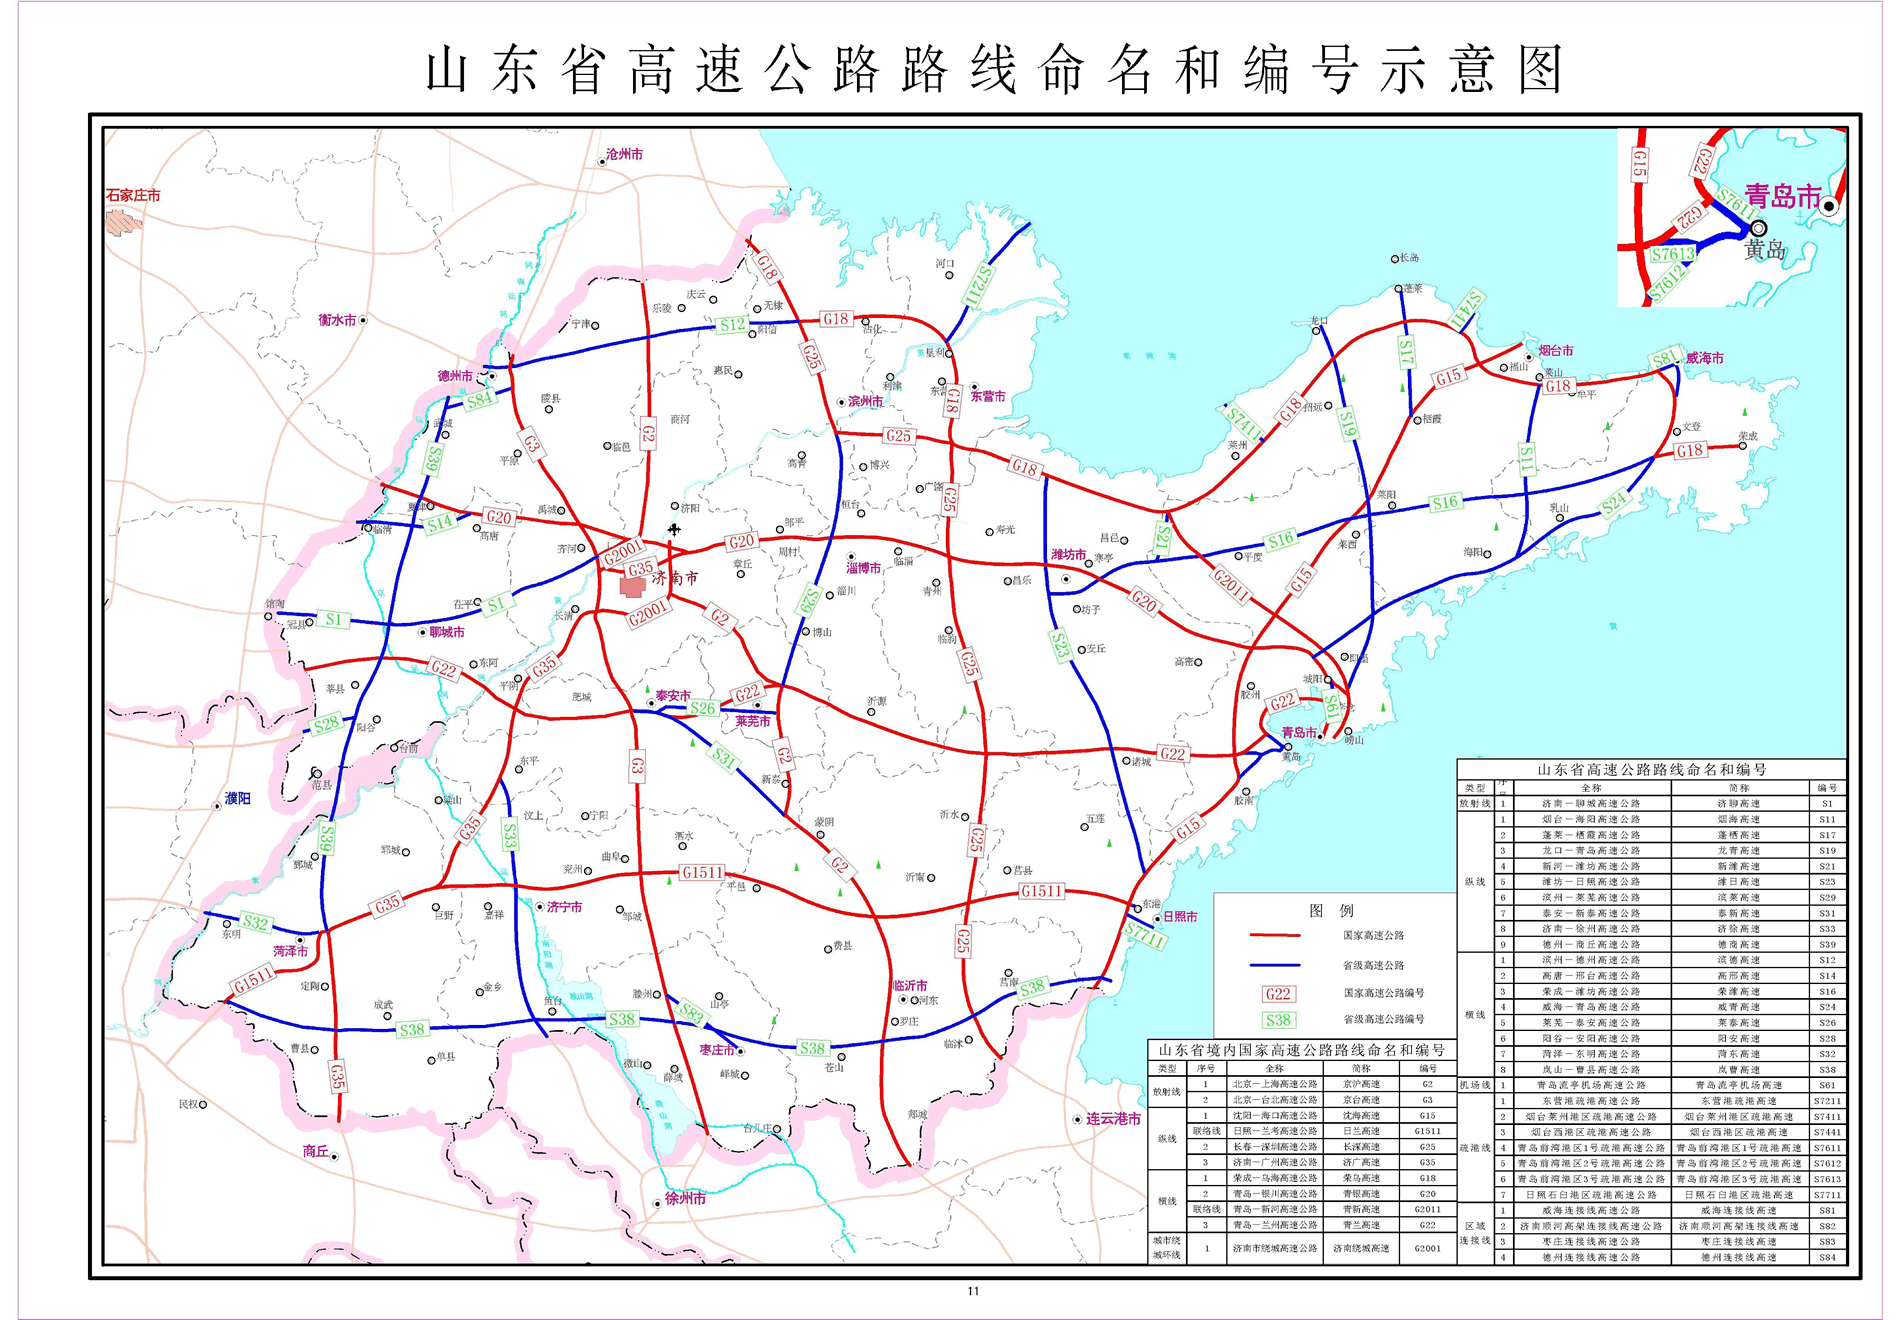 煙臺—海陽高速公路(煙海高速)